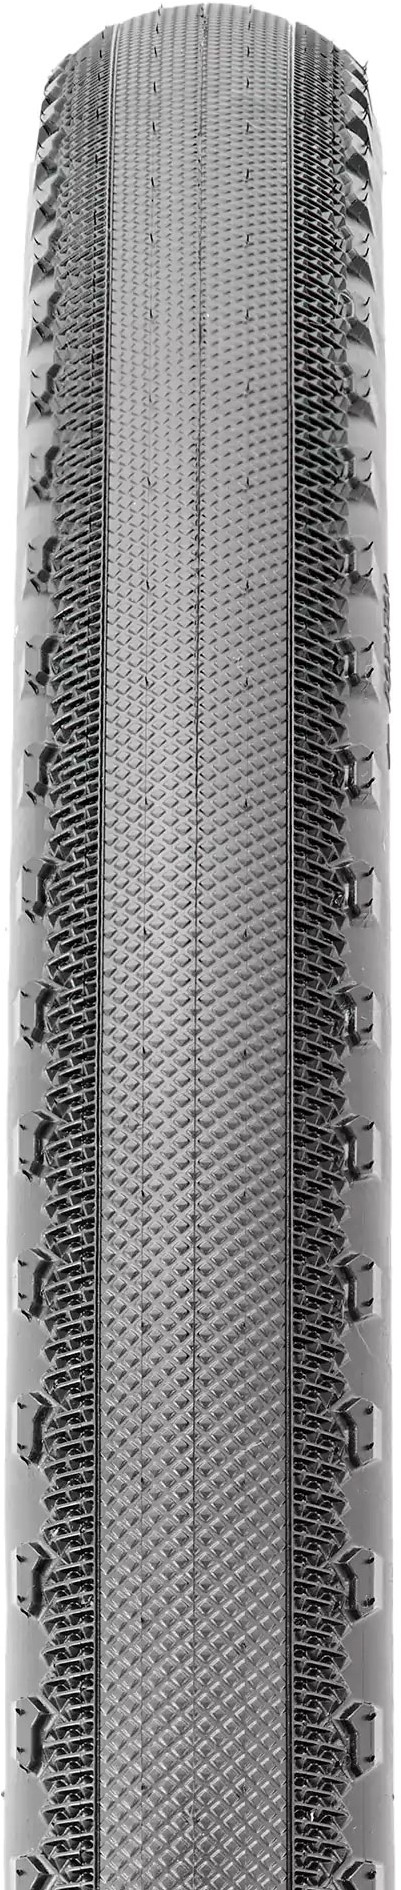 Receptor Folding 60TPI EXO TR 650b Gravel Tyre image 1